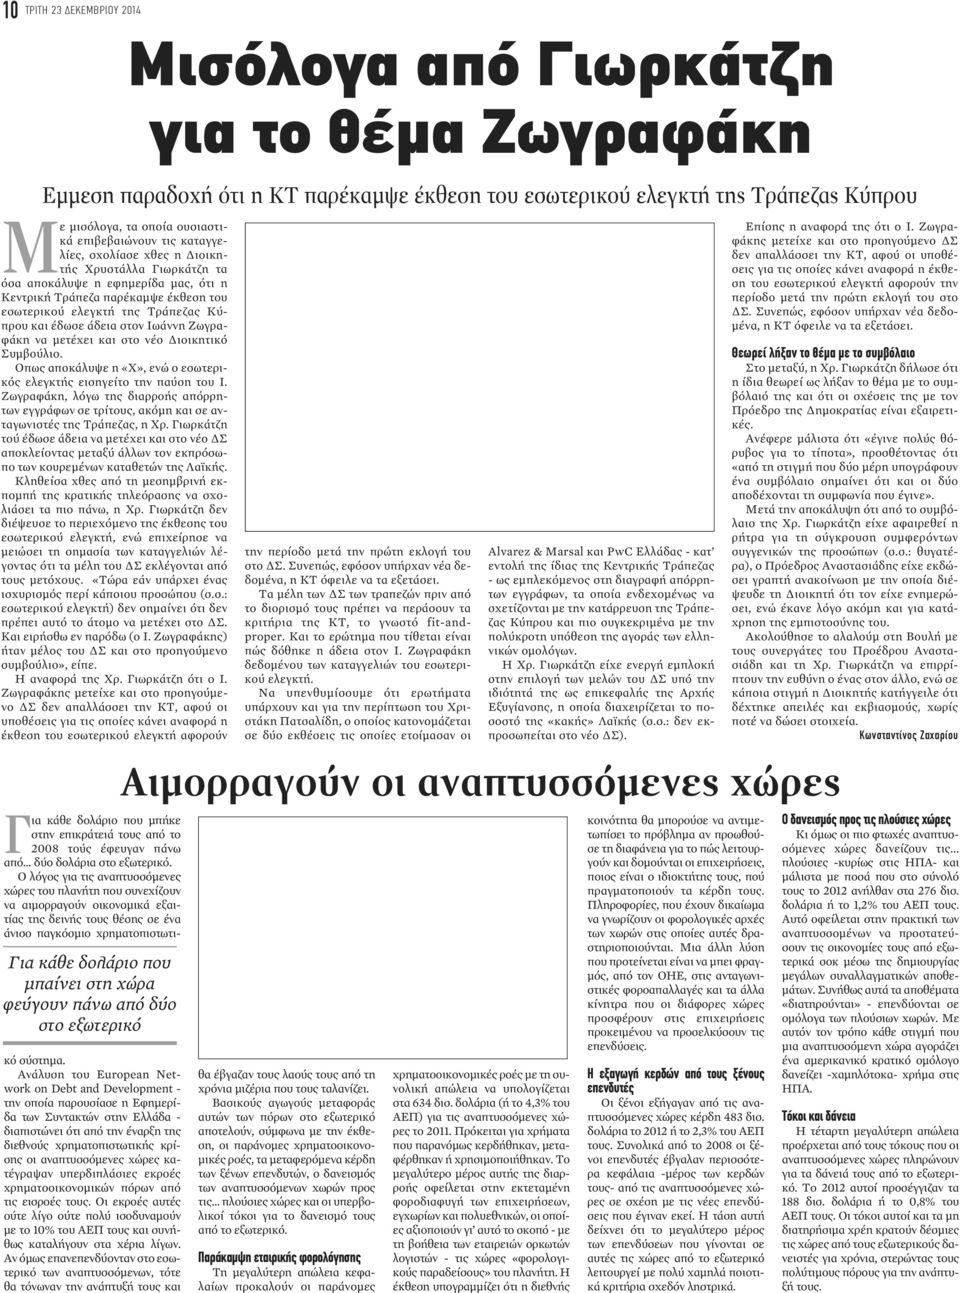 Ανάλυση του European Network on Debt and Development - την οποία παρουσίασε η Εφημερίδα των Συντακτών στην Ελλάδα - διαπιστώνει ότι από την έναρξη της διεθνούς χρηματοπιστωτικής κρίσης οι